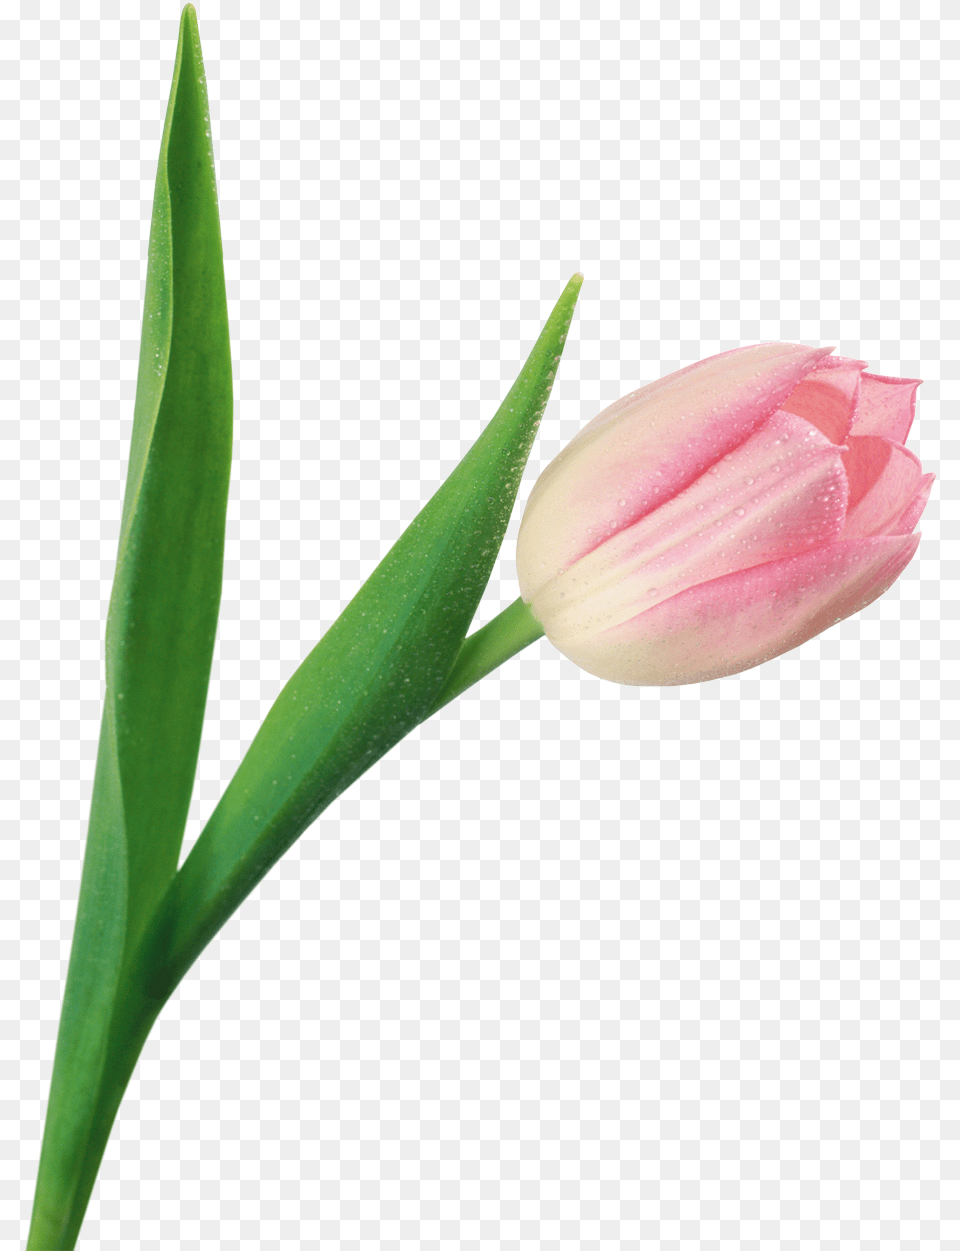 Download Tulip Image For Transparent, Flower, Plant, Rose Png